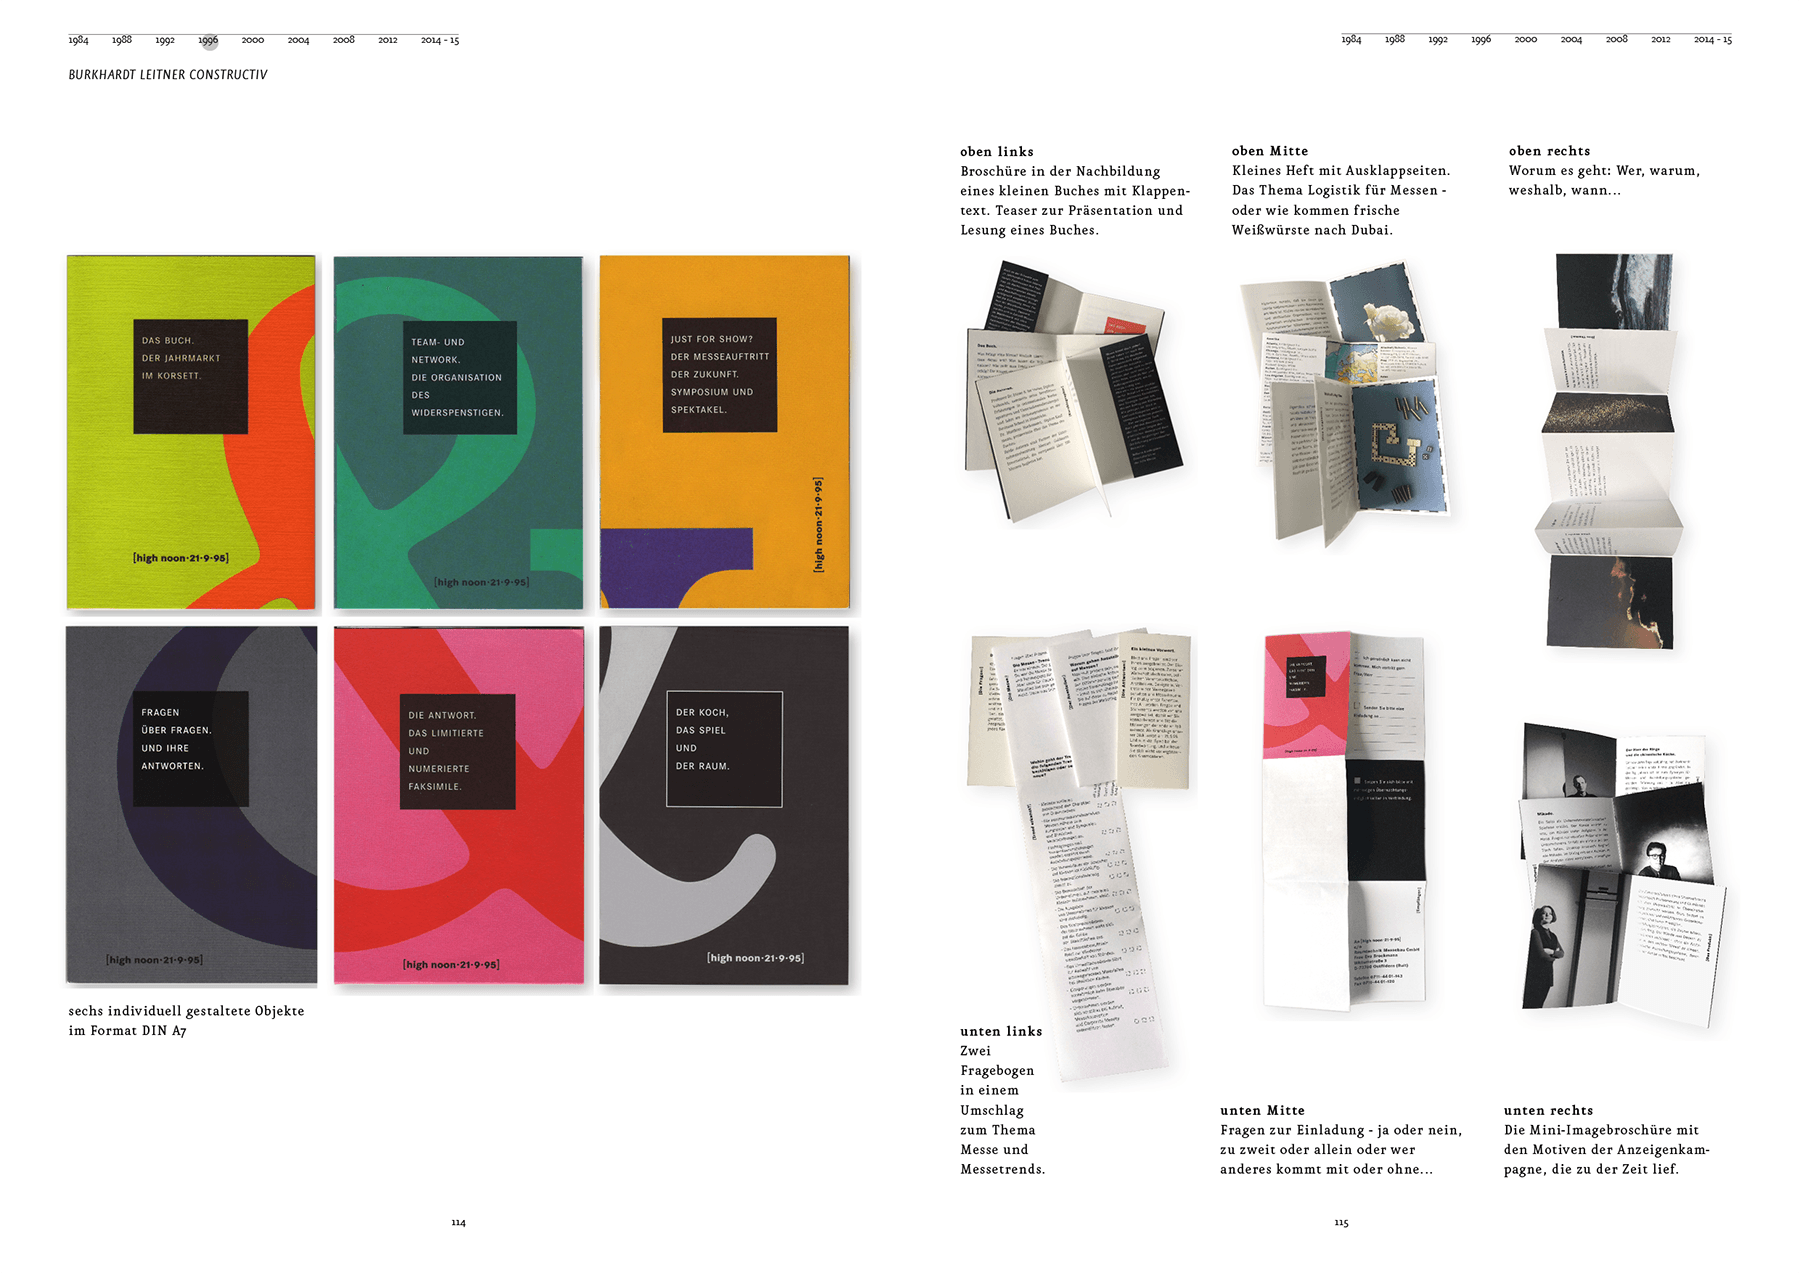 sabine-mescher-sichtung-designbilderbuch-branding-fuer-designkongress.png